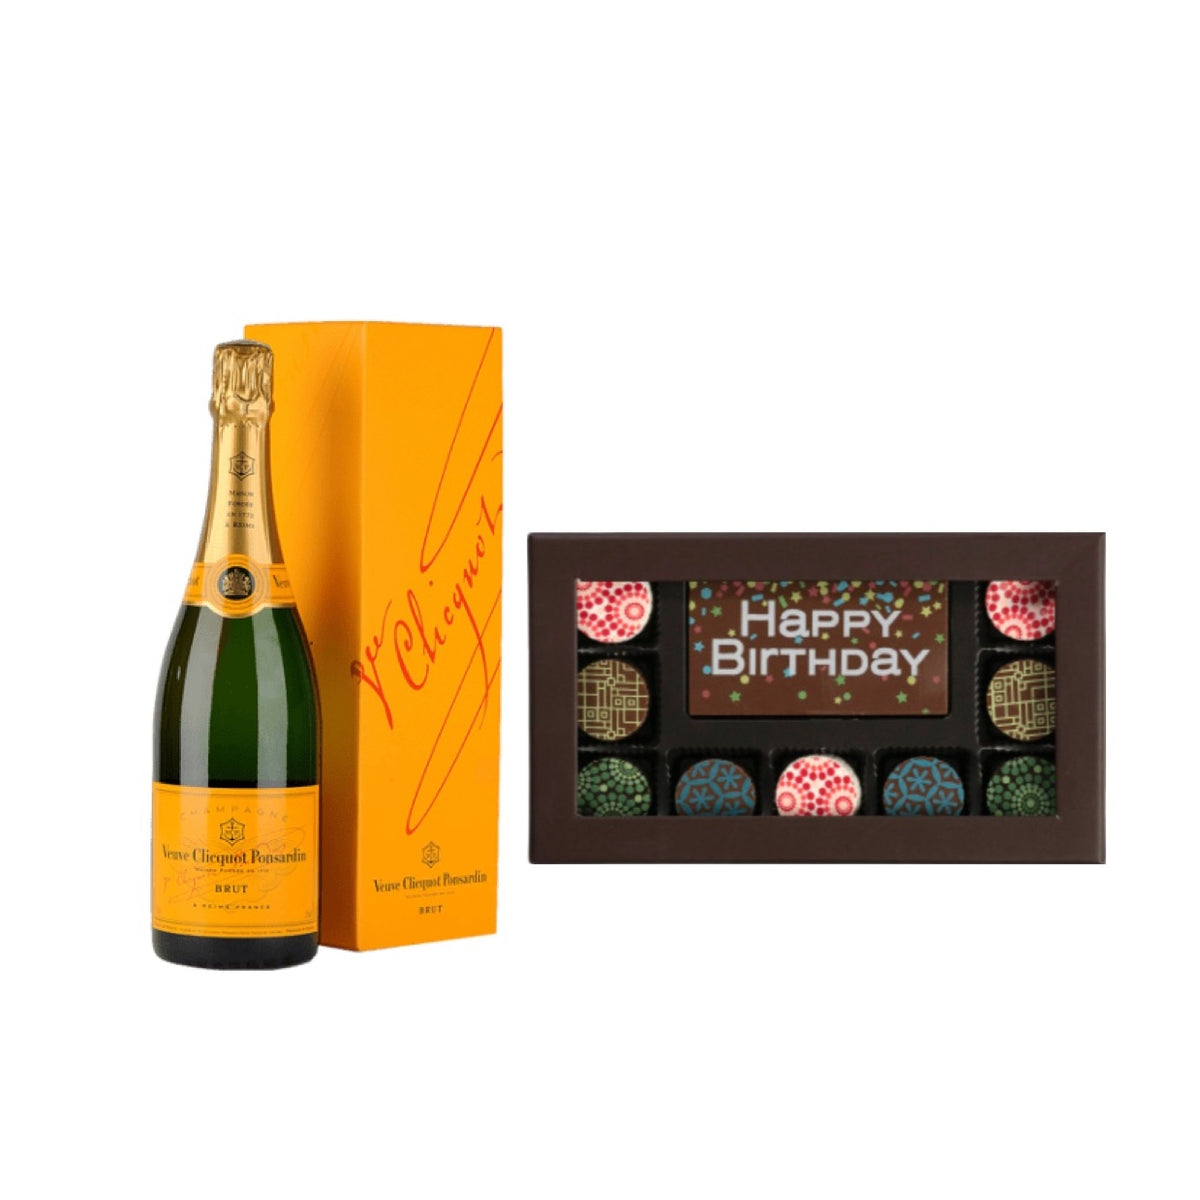 Veuve Clicquot Brut Champagne with Godiva Chocolate Box